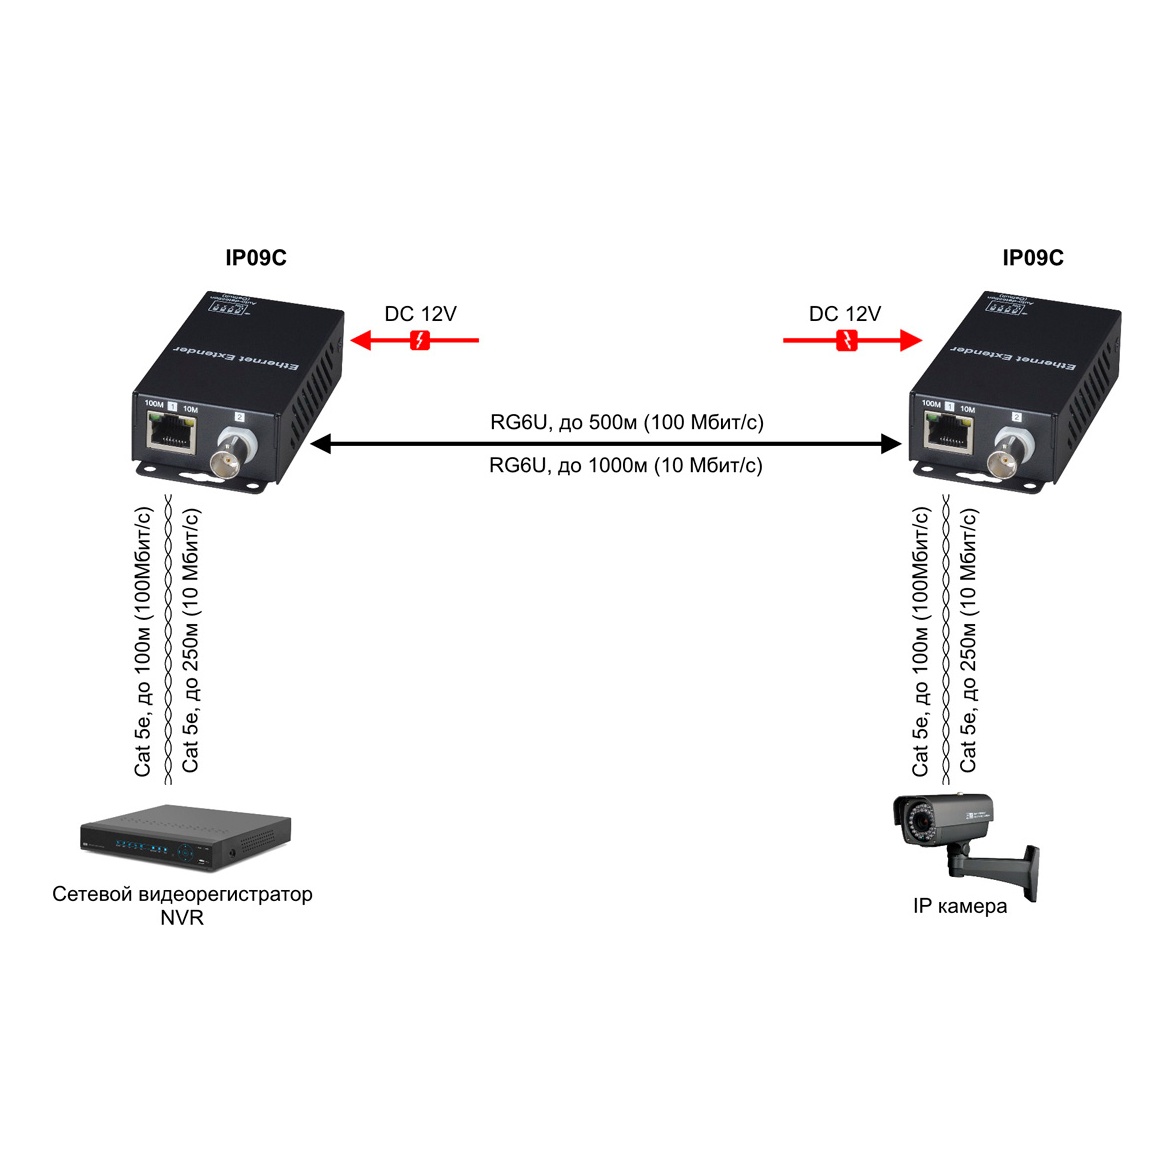 SC&T IP09CK IP09CK Комплект удлинителей Ethernet по коаксиальному кабелю до 1000м, включает приемник и передатчик